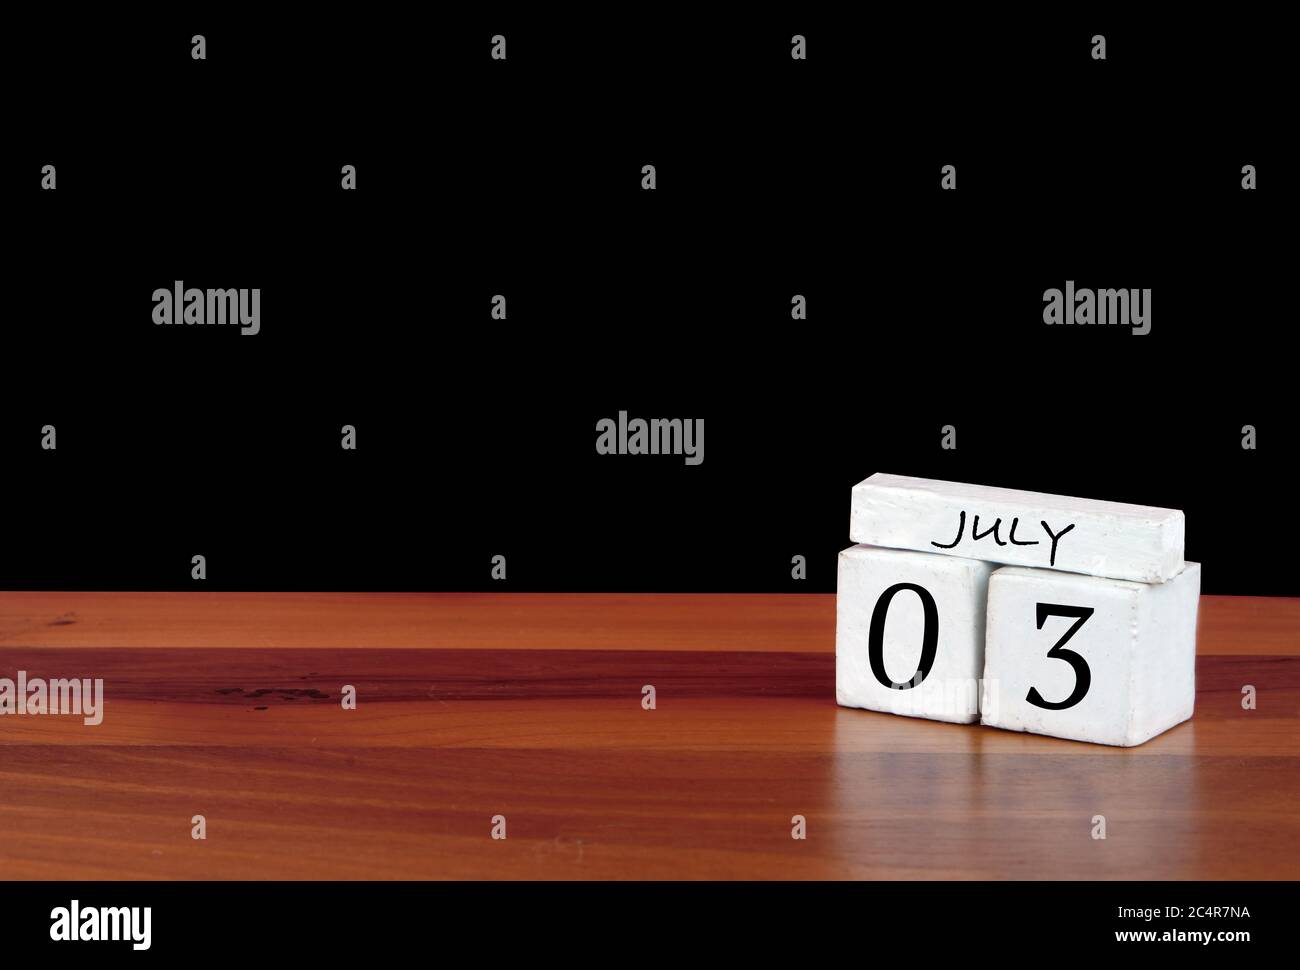 3 luglio mese di calendario. 3 giorni del mese. Calendario riflesso su pavimento in legno con sfondo nero Foto Stock